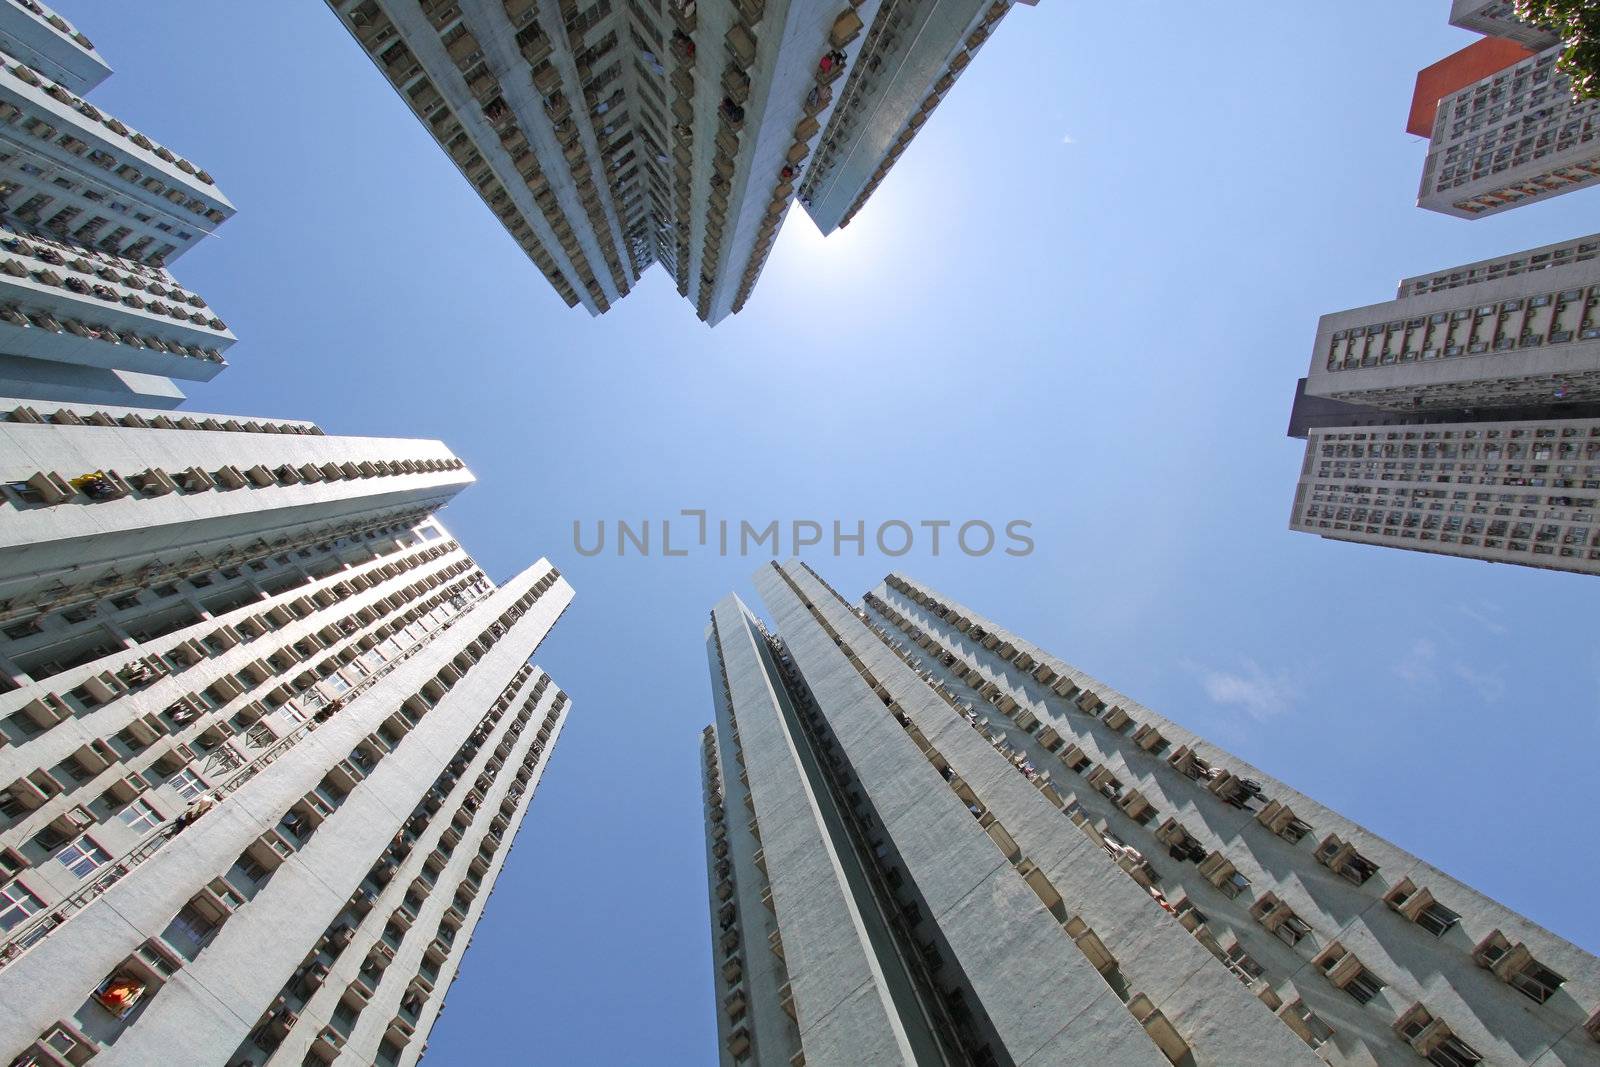 Hong Kong crowded housing apartments by kawing921